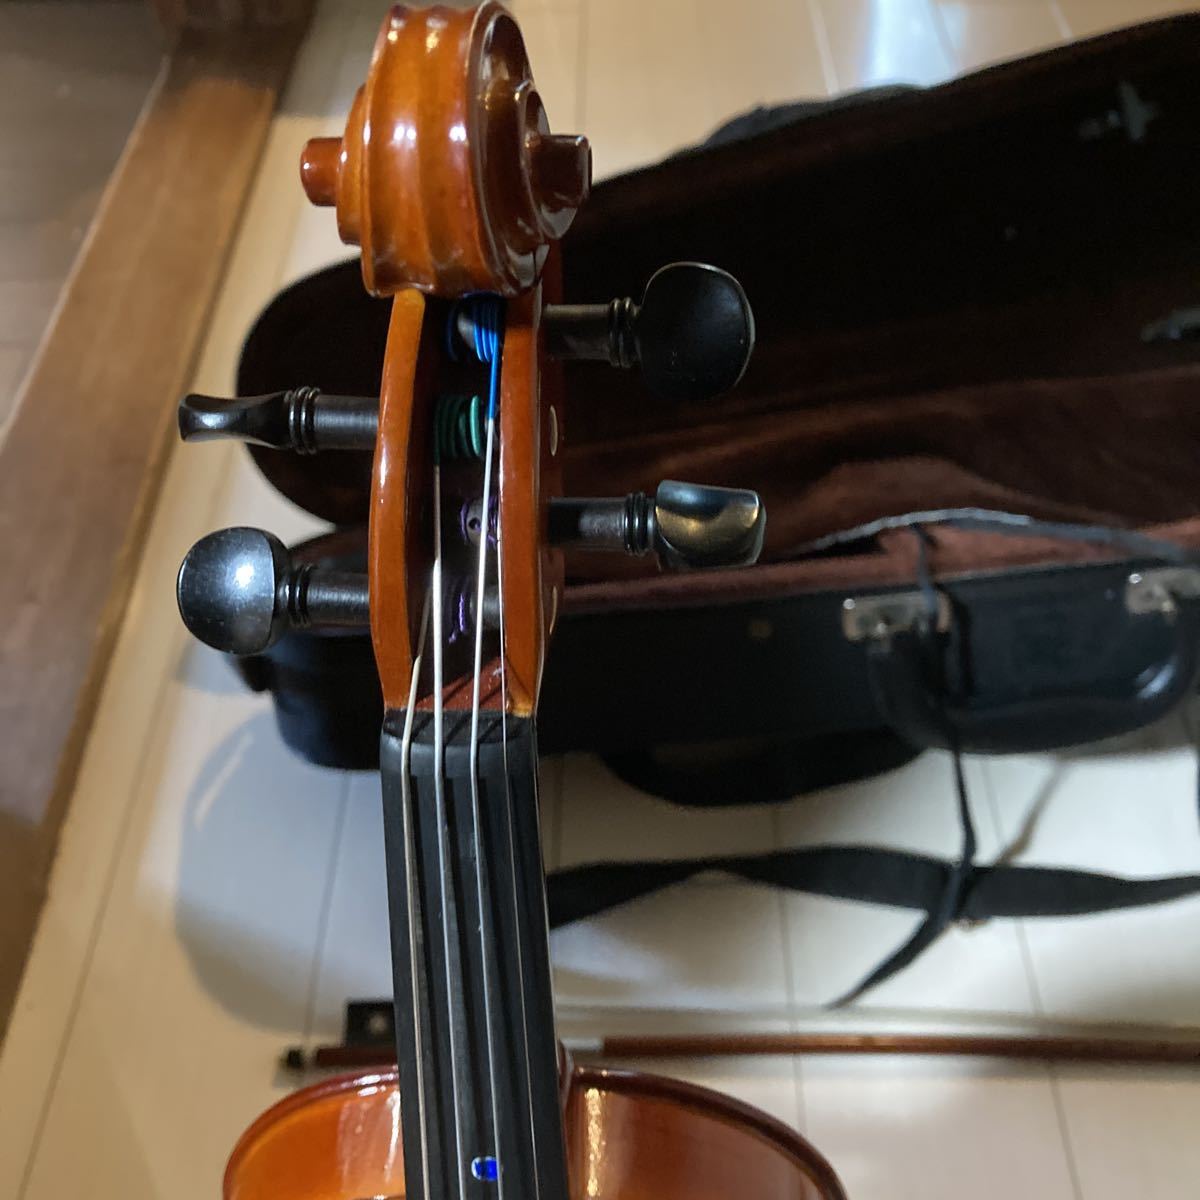 バイオリン カルロ ジョルダーノ VS-1 1/4 2017 バイオリンセット 